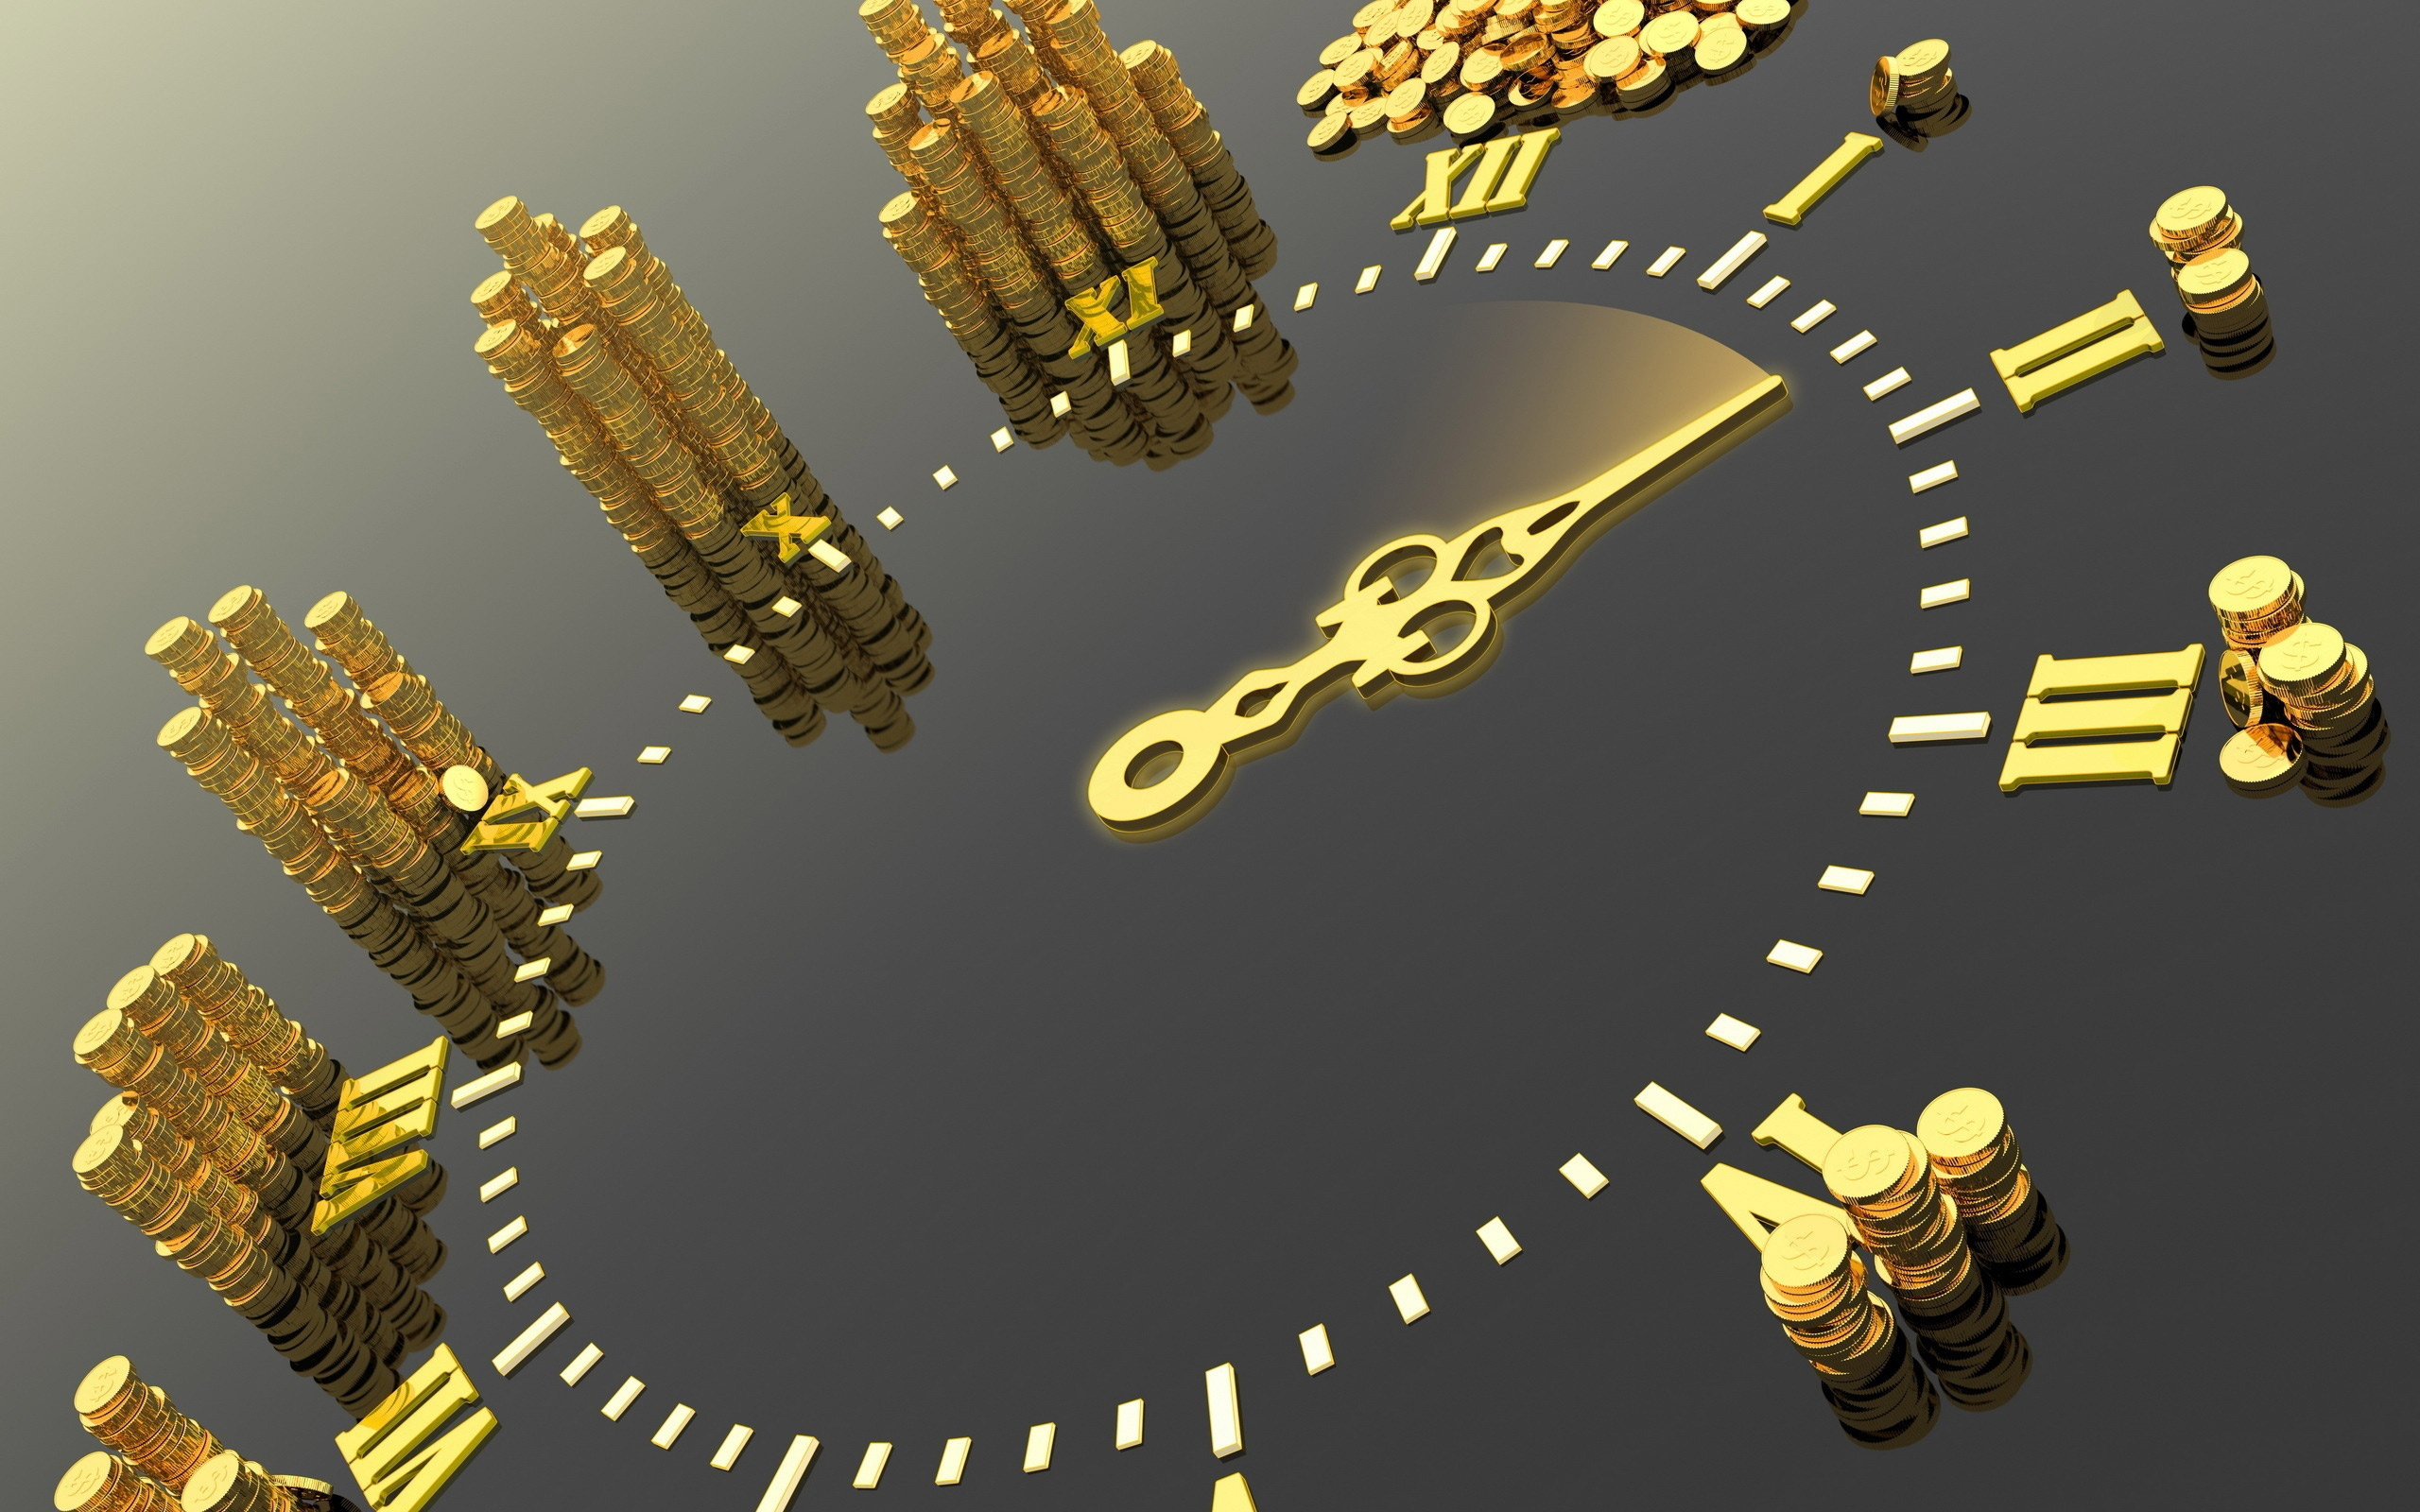 золотые часы, стрелка, золотые монеты, креативные обои, Gold watch, arrow, gold coins, creative wallpaper